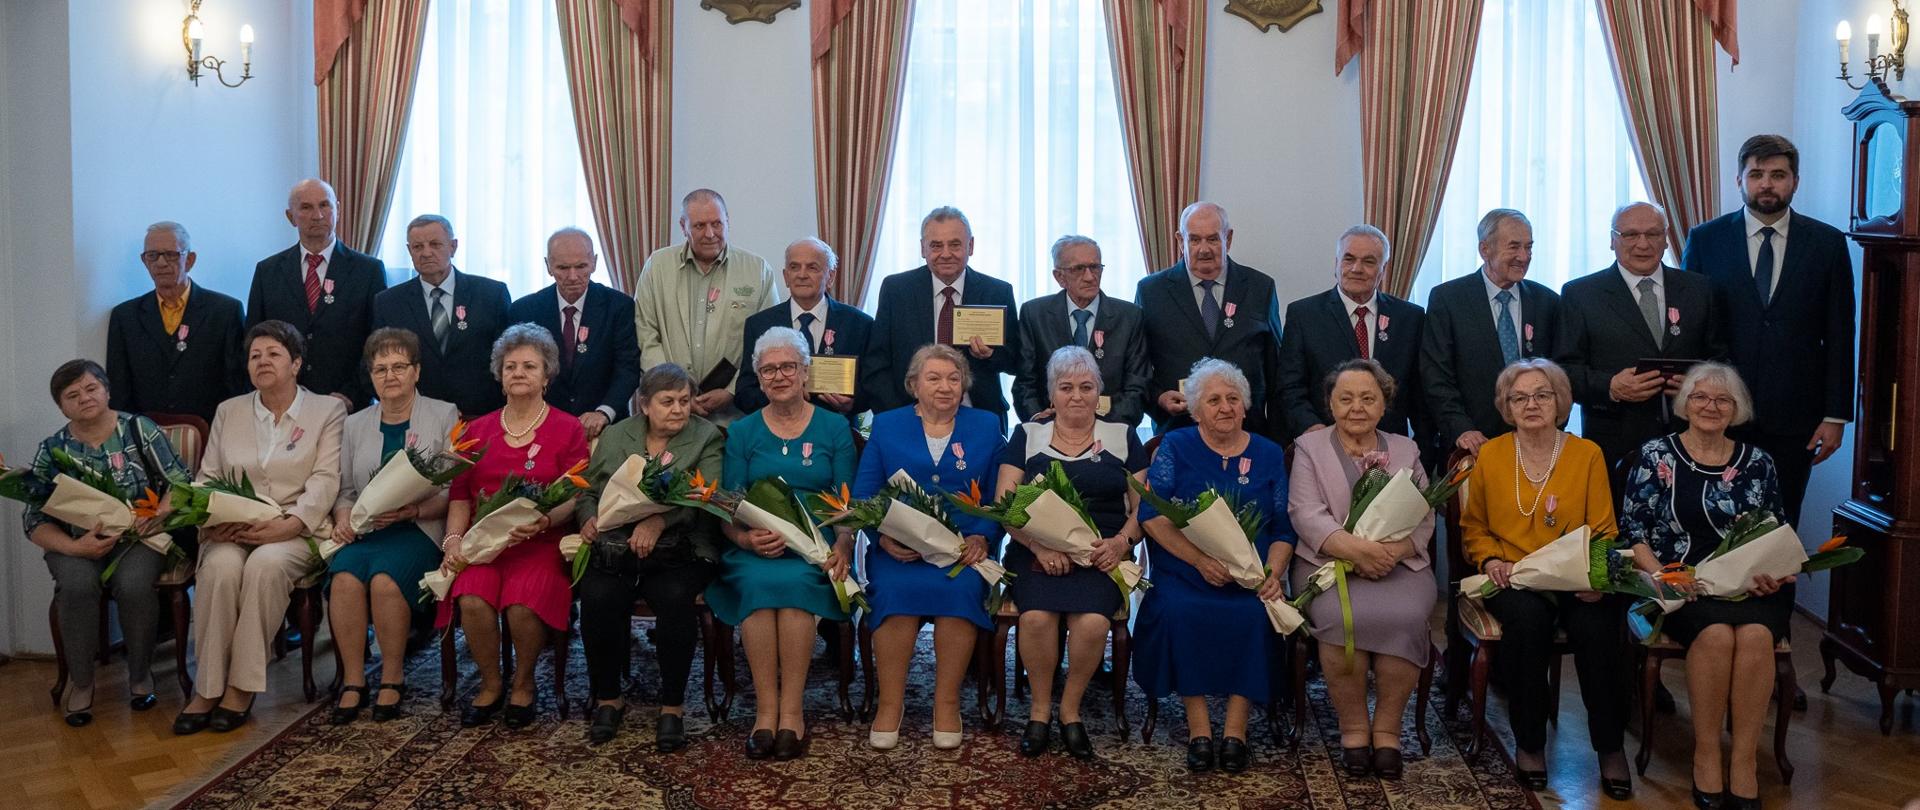 Zdjęcie przedstawia 25 osób wewnątrz budynku. W pierwszym rzędzie kobiety siedzą na krzesłach, a za nimi stoją mężczyźni. Kobiety trzymają w rękach bukiety kwiatów.